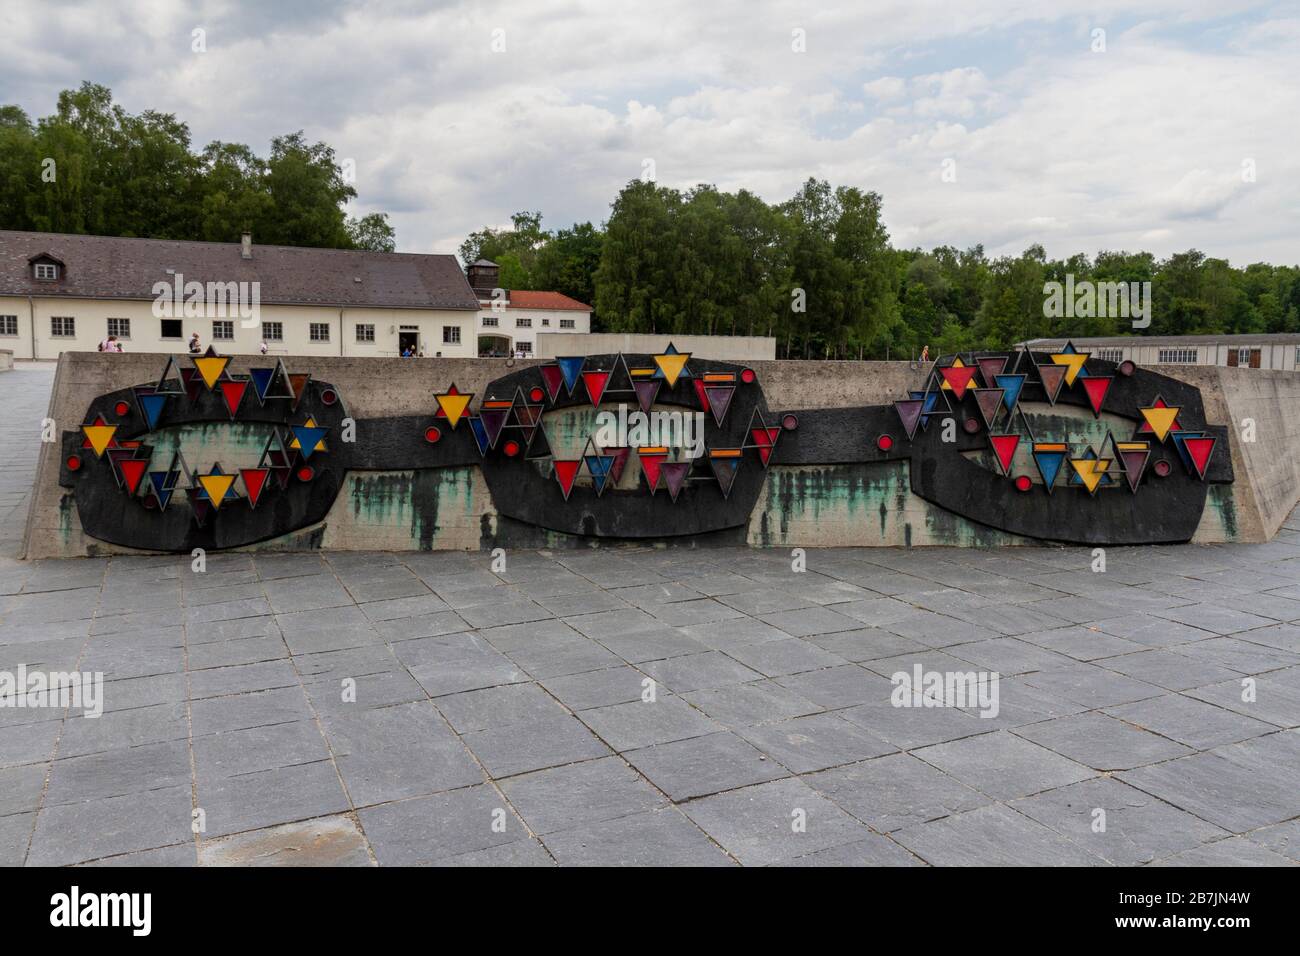 Erleichterung mit Häftlingsdreiecken, die an einer Kette befestigt sind, eine Gedenkstätte für ehemalige politische Häftlinge im KZ Dachau-München. Stockfoto